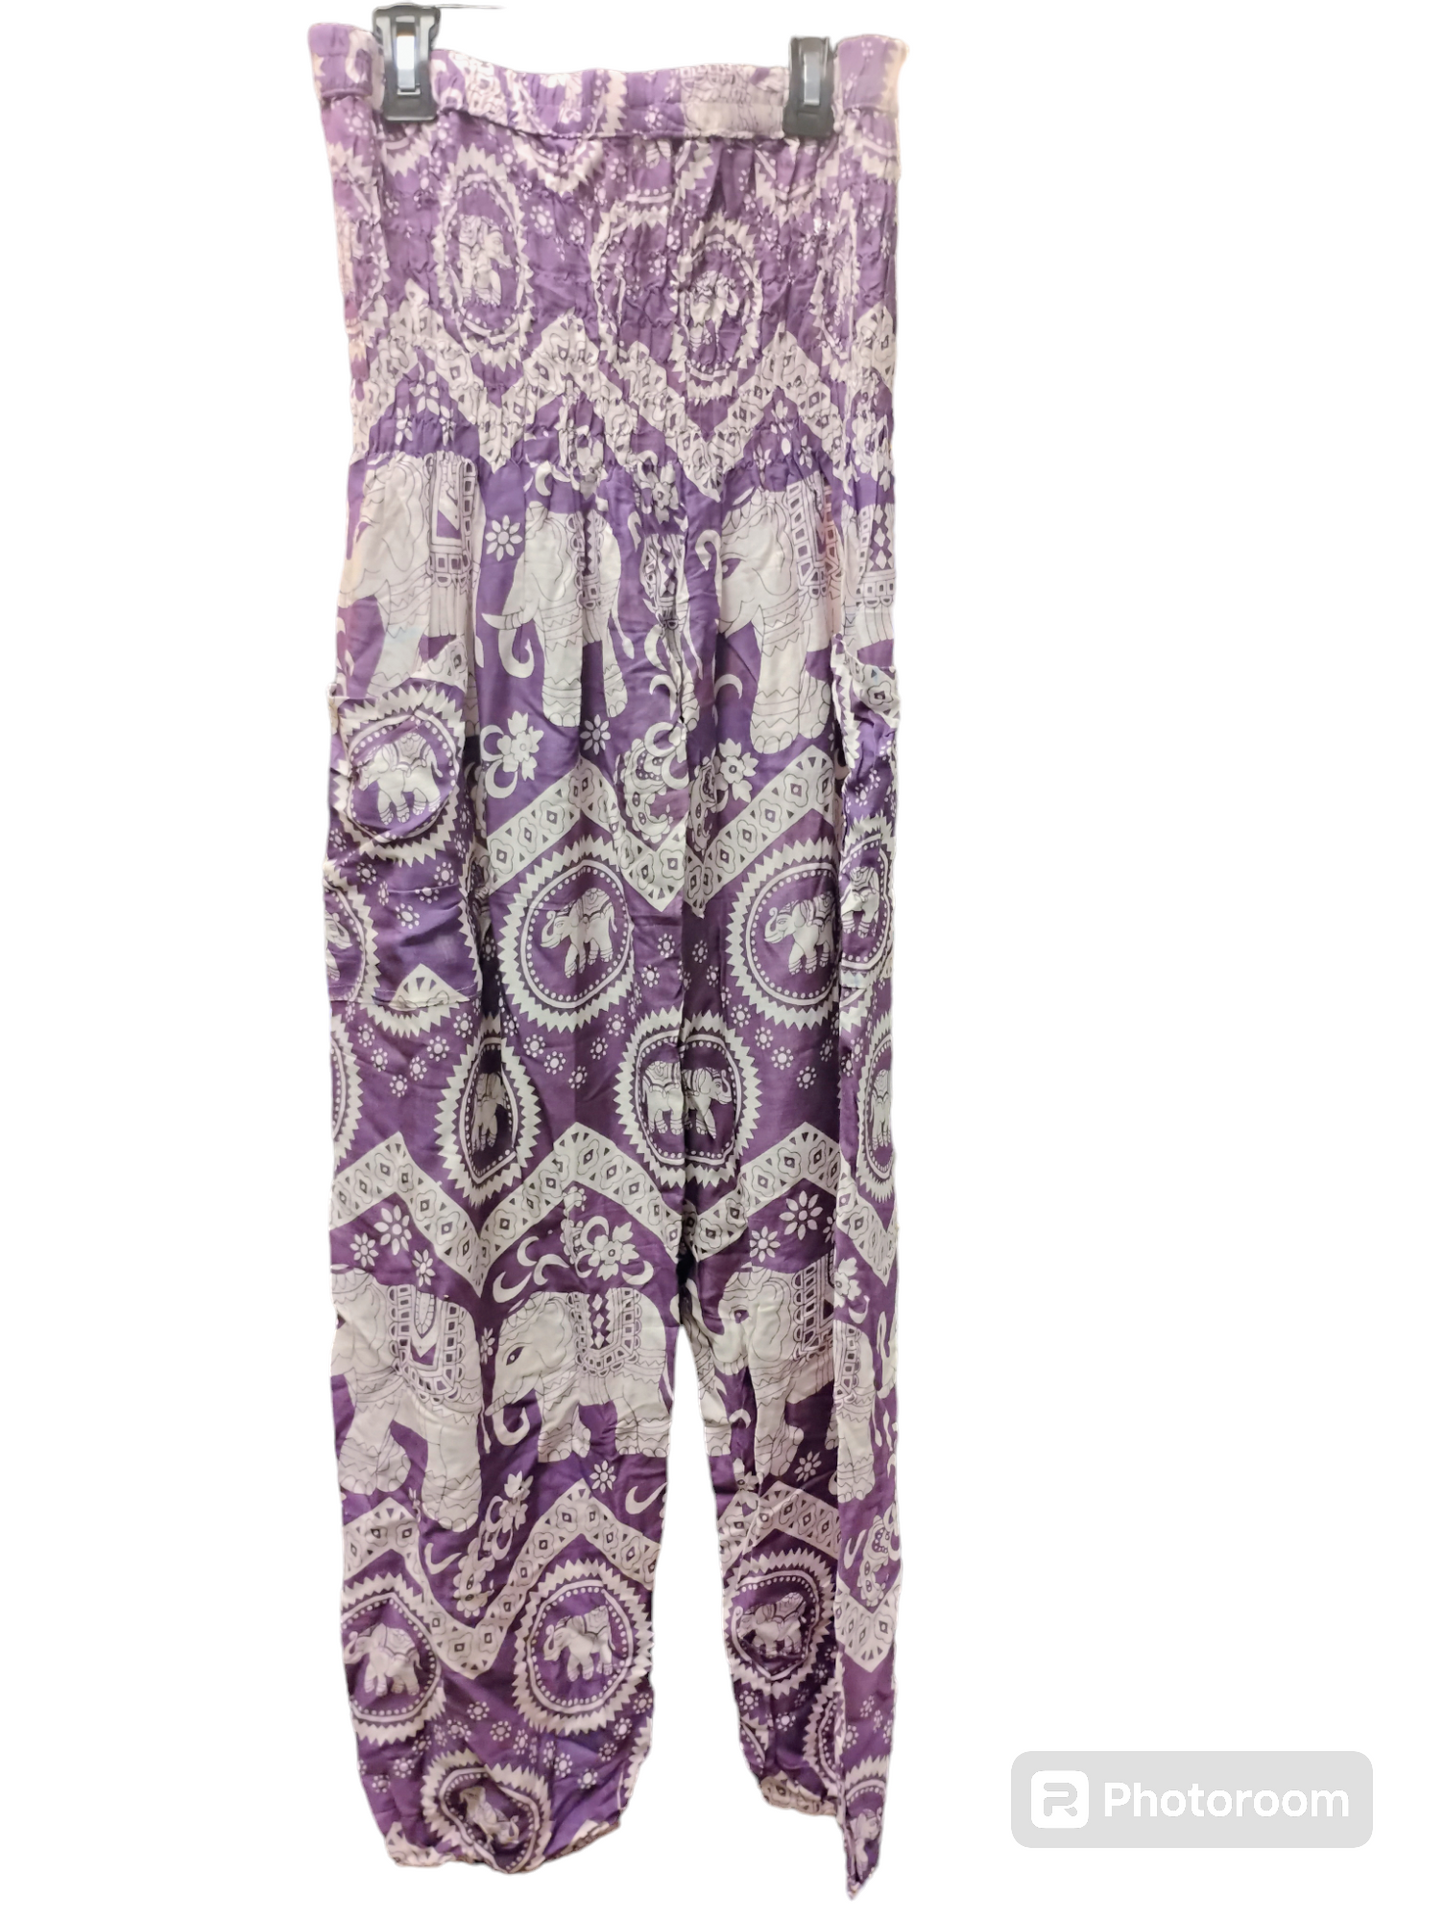 Rayon Genie Pants: Purple elephant